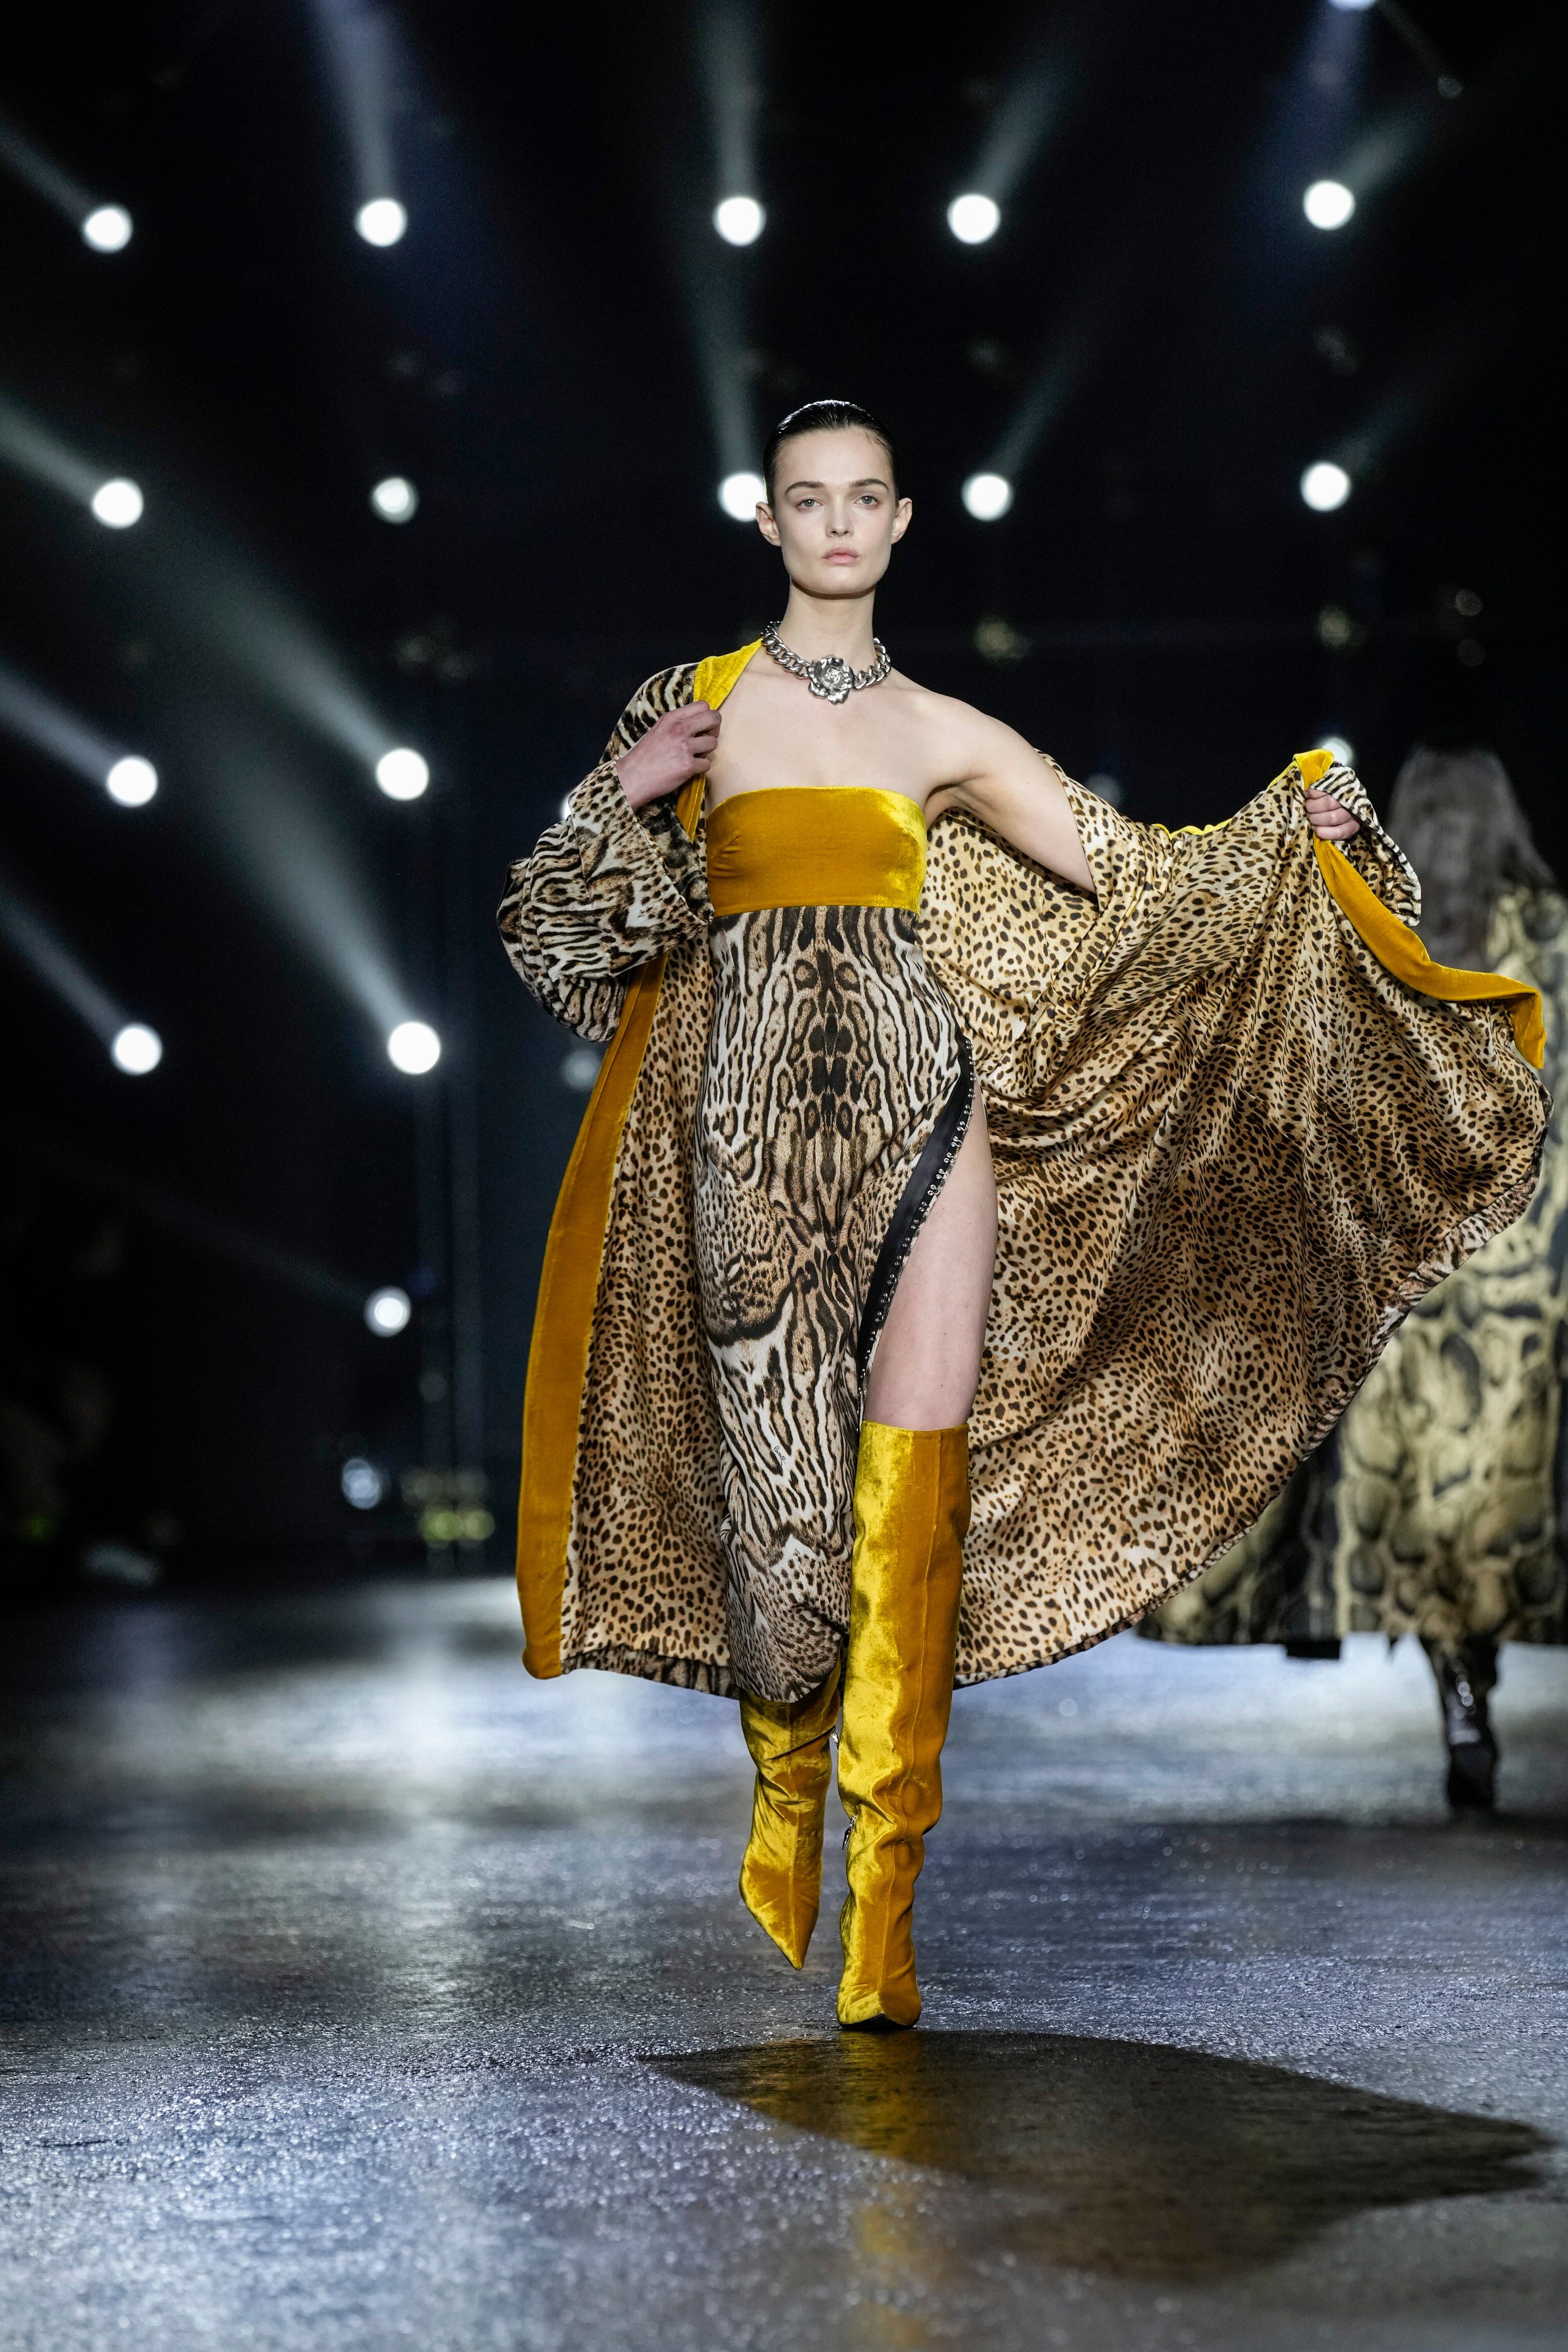 Semana de Moda de Milão começa com Bella Hadid em desfile da Fendi